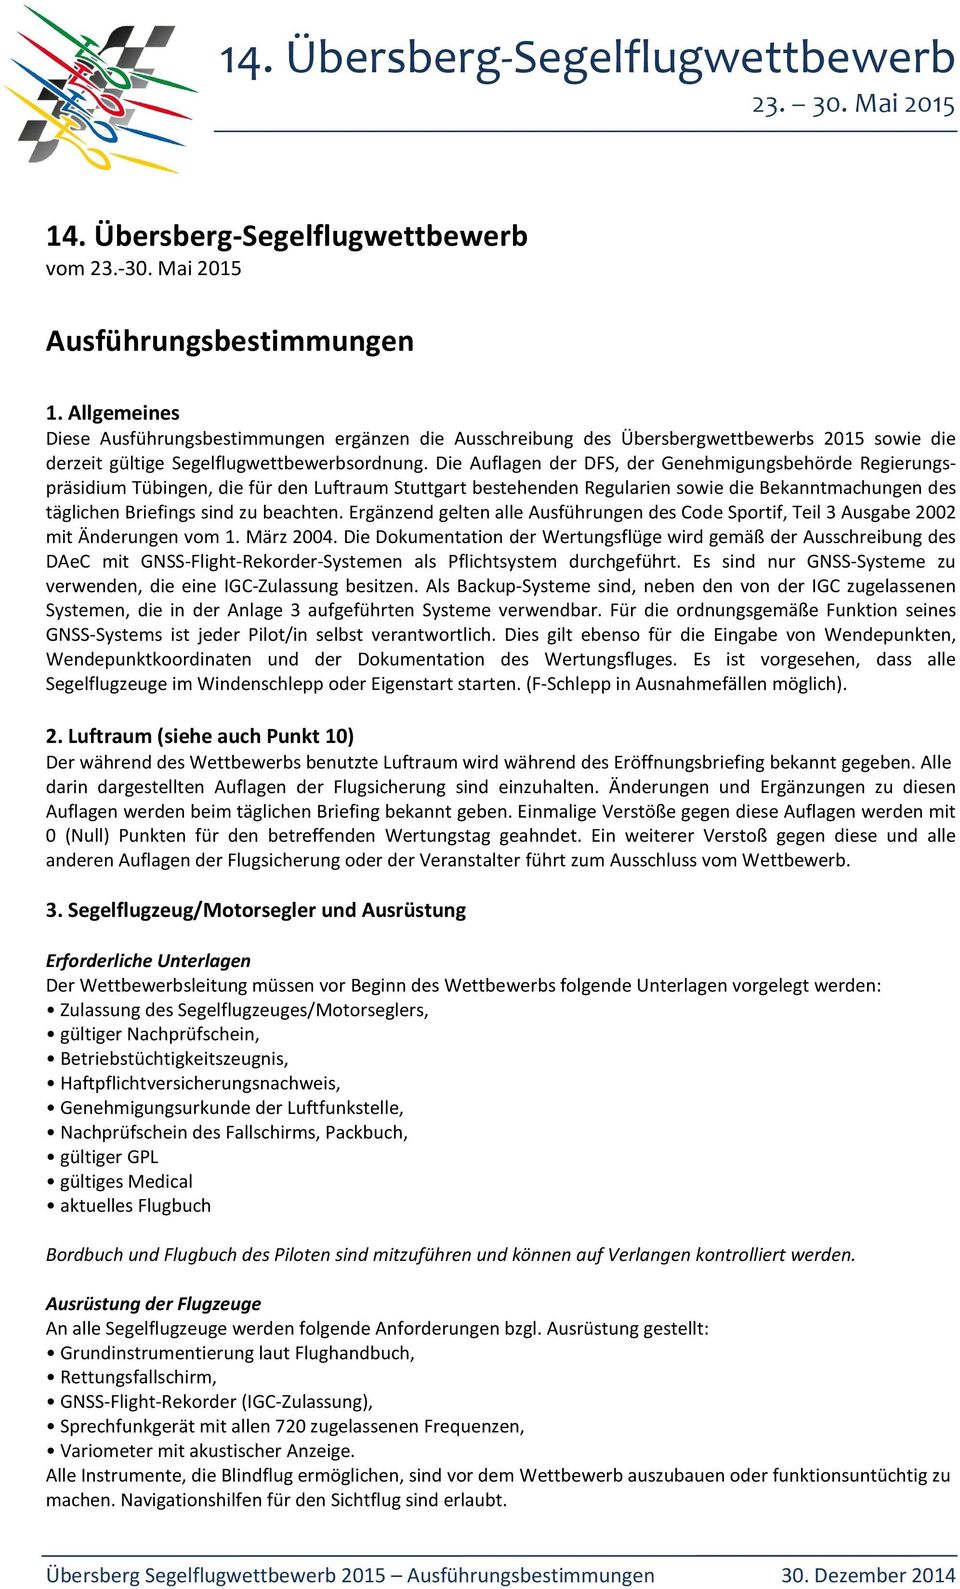 Die Auflagen der DFS, der Genehmigungsbehörde Regierungspräsidium Tübingen, die für den Luftraum Stuttgart bestehenden Regularien sowie die Bekanntmachungen des täglichen Briefings sind zu beachten.